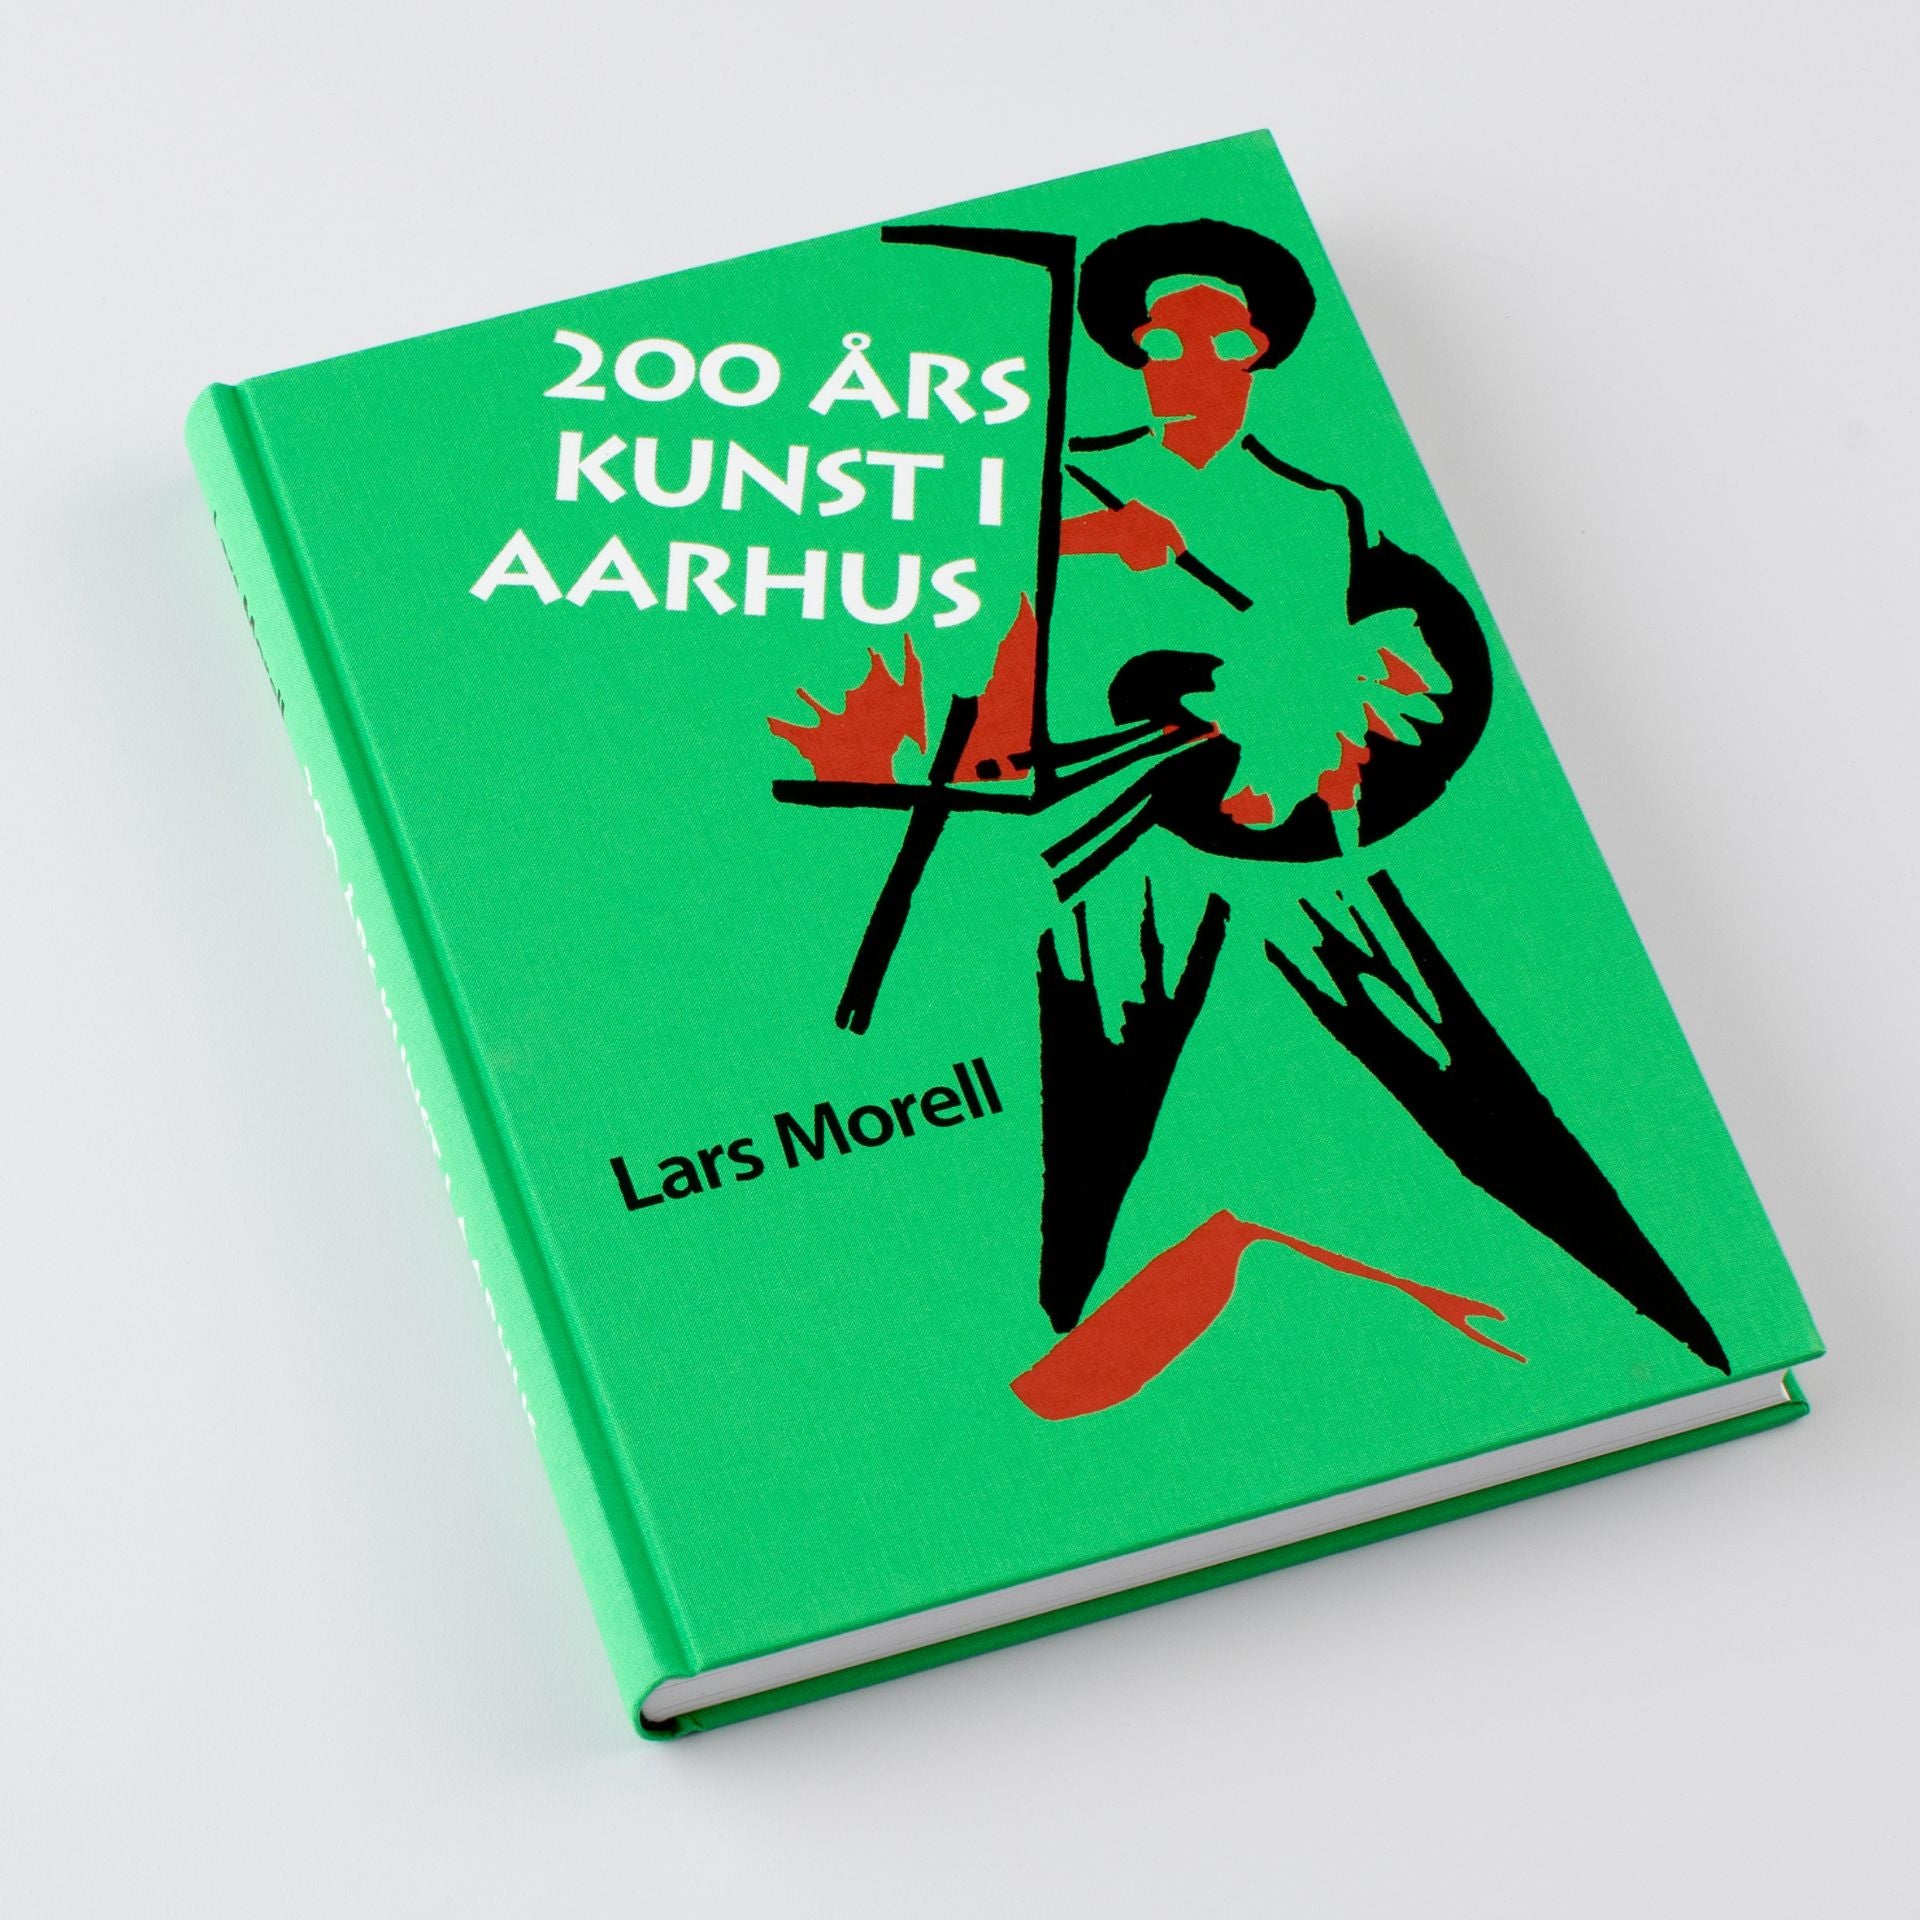 200 års kunst i Aarhus